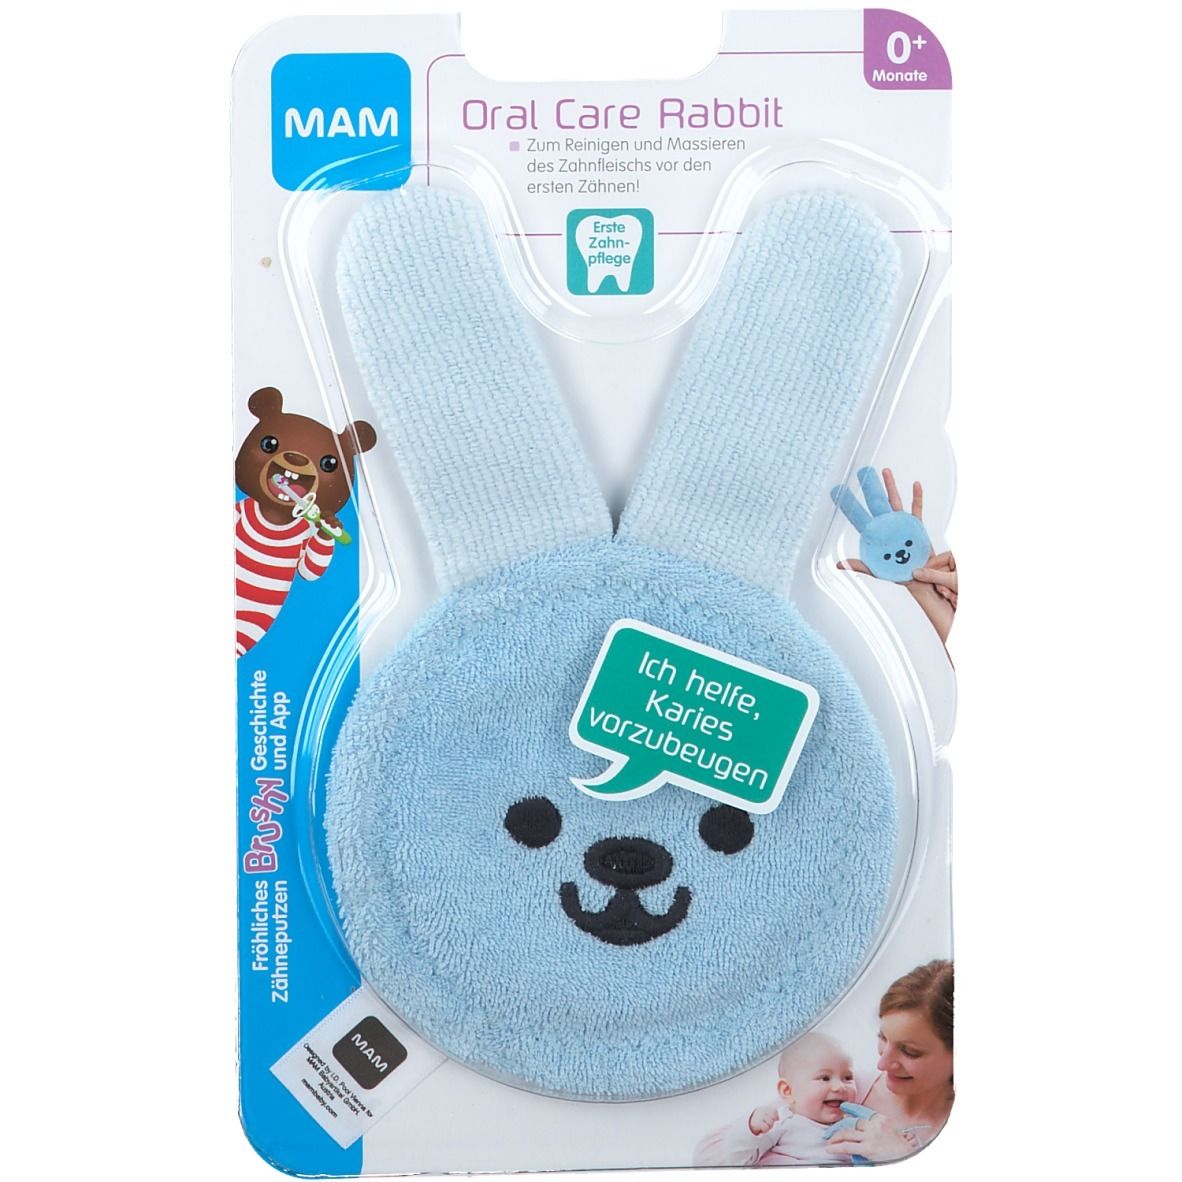 MAM Oral Care Rabbit (Farbe nicht wählbar)